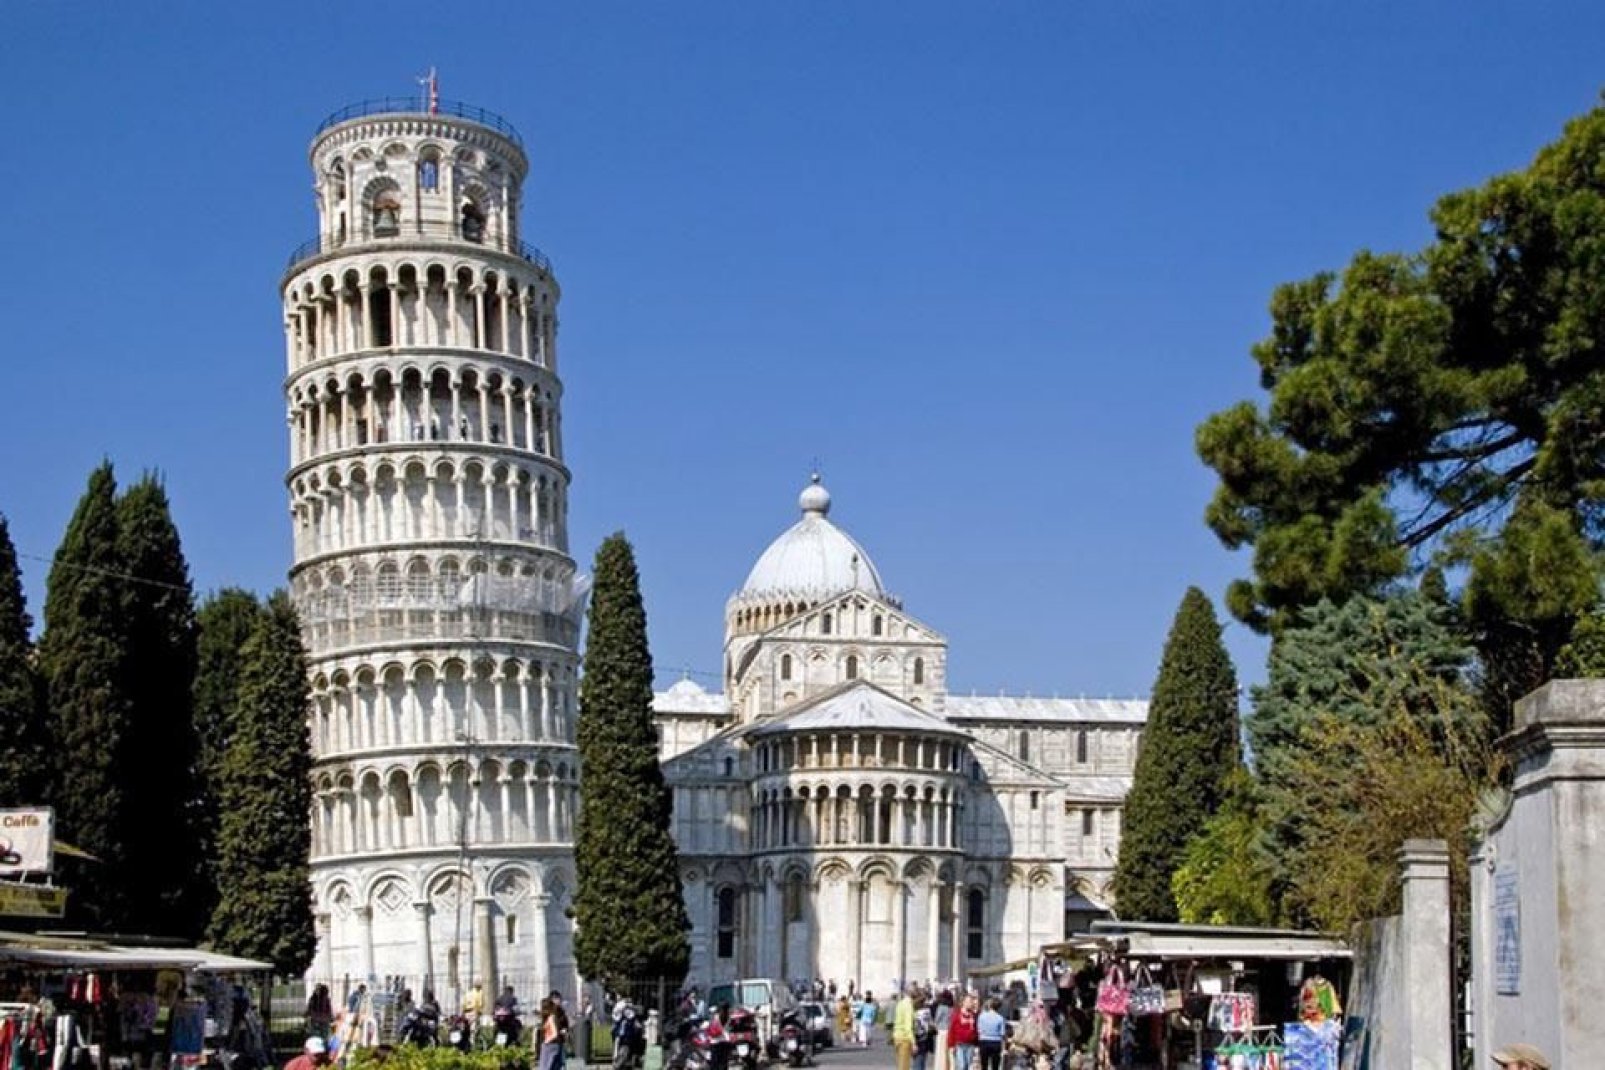 El complejo arquitectónico de la Piazza dei Miracoli es el centro artístico más importante de Pisa, declarado Patrimonio de la Humanidad por la Unesco.